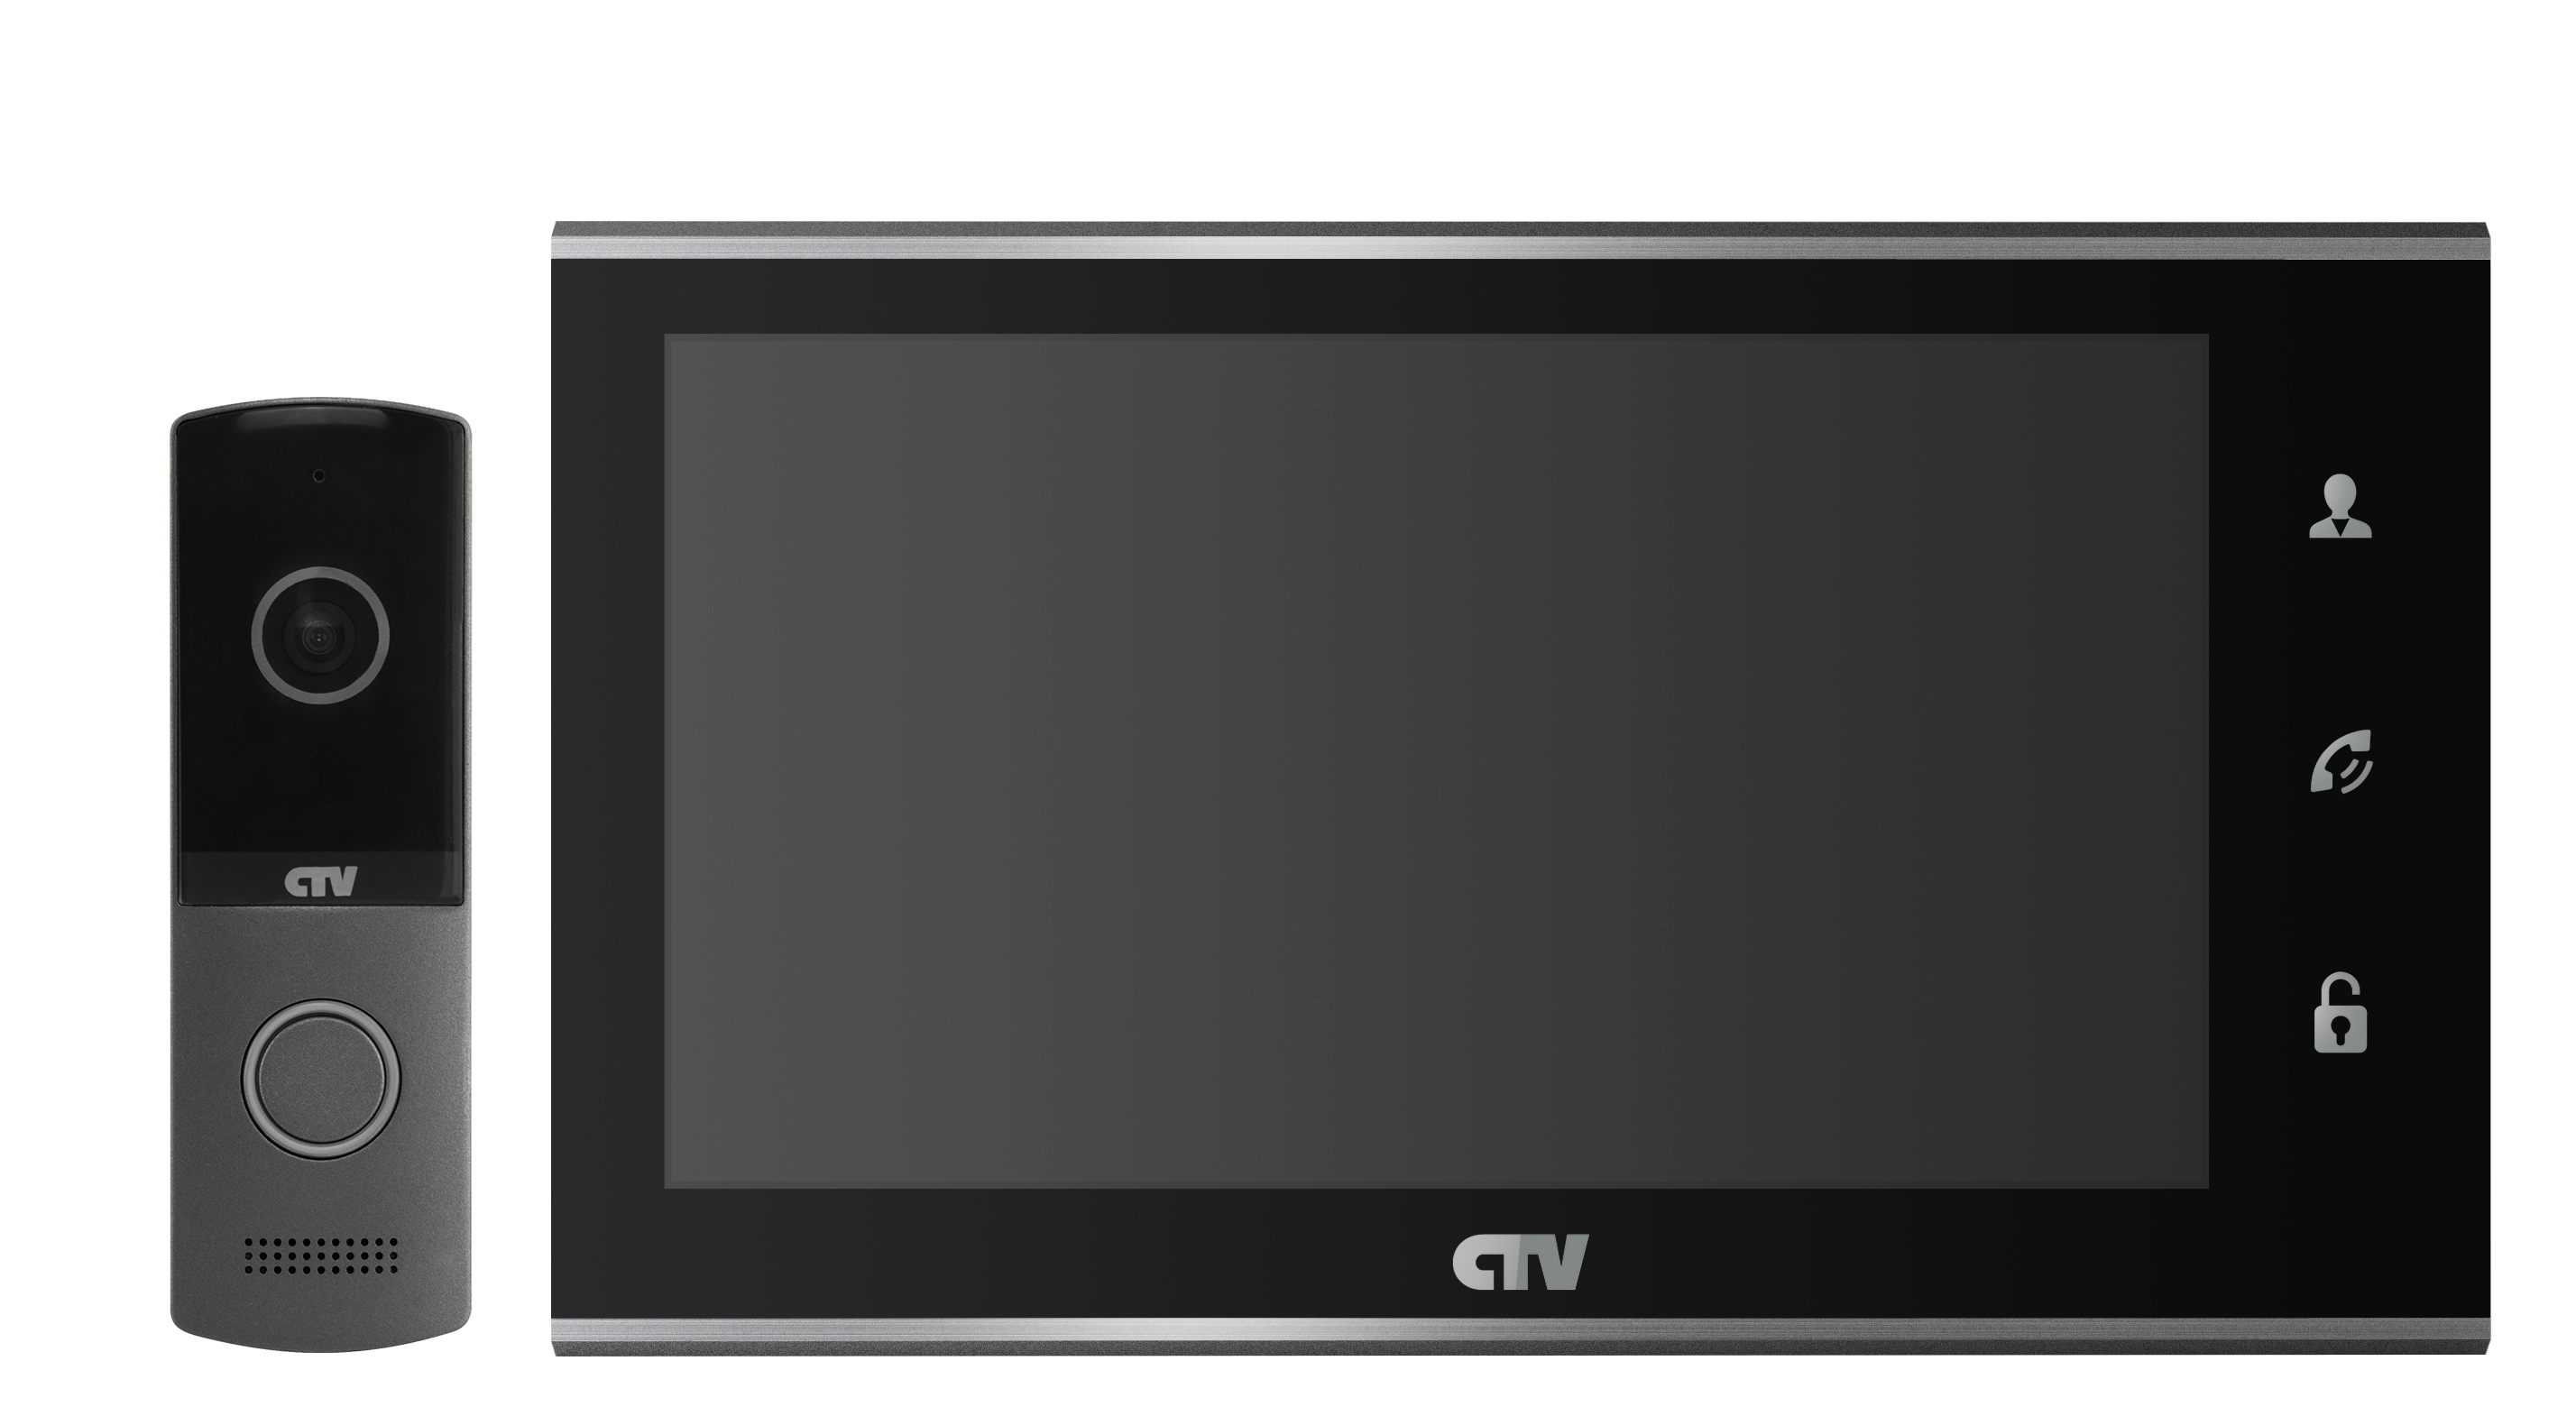 Комплект видеодомофона с вызывной панелью. CTV CTV-m4102fhd b (чёрный). Видеодомофон CTV-m2702md b. CTV-m4705ahd цветной монитор. CTV-m4705ahd (черный).